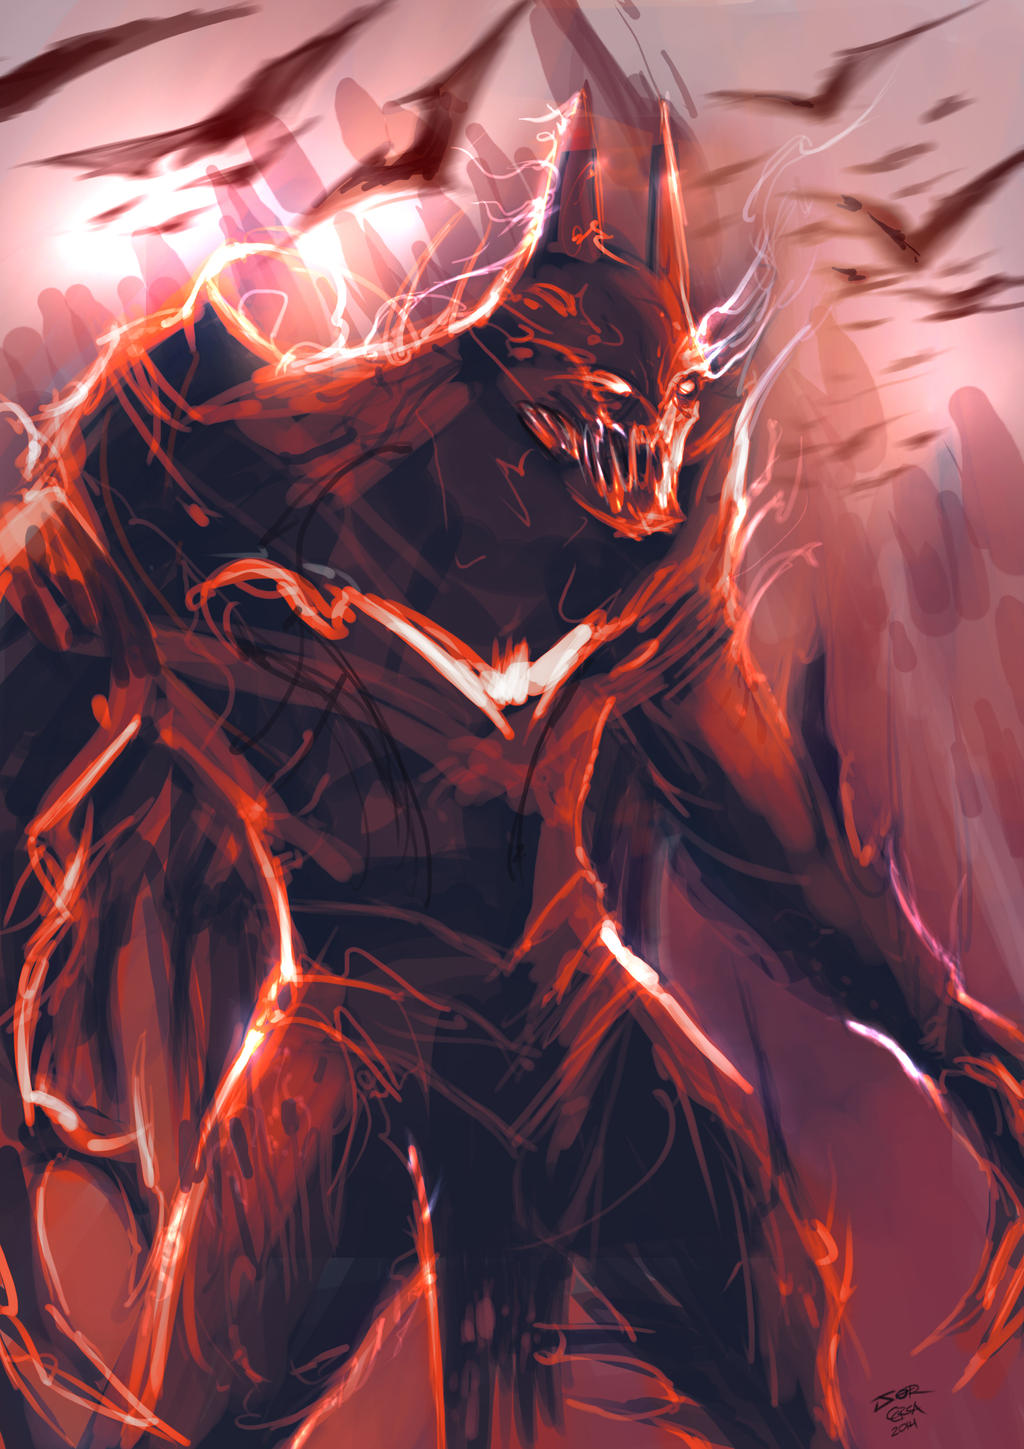 Monster batman 1 - SpeedPaint by jorcerca on DeviantArt